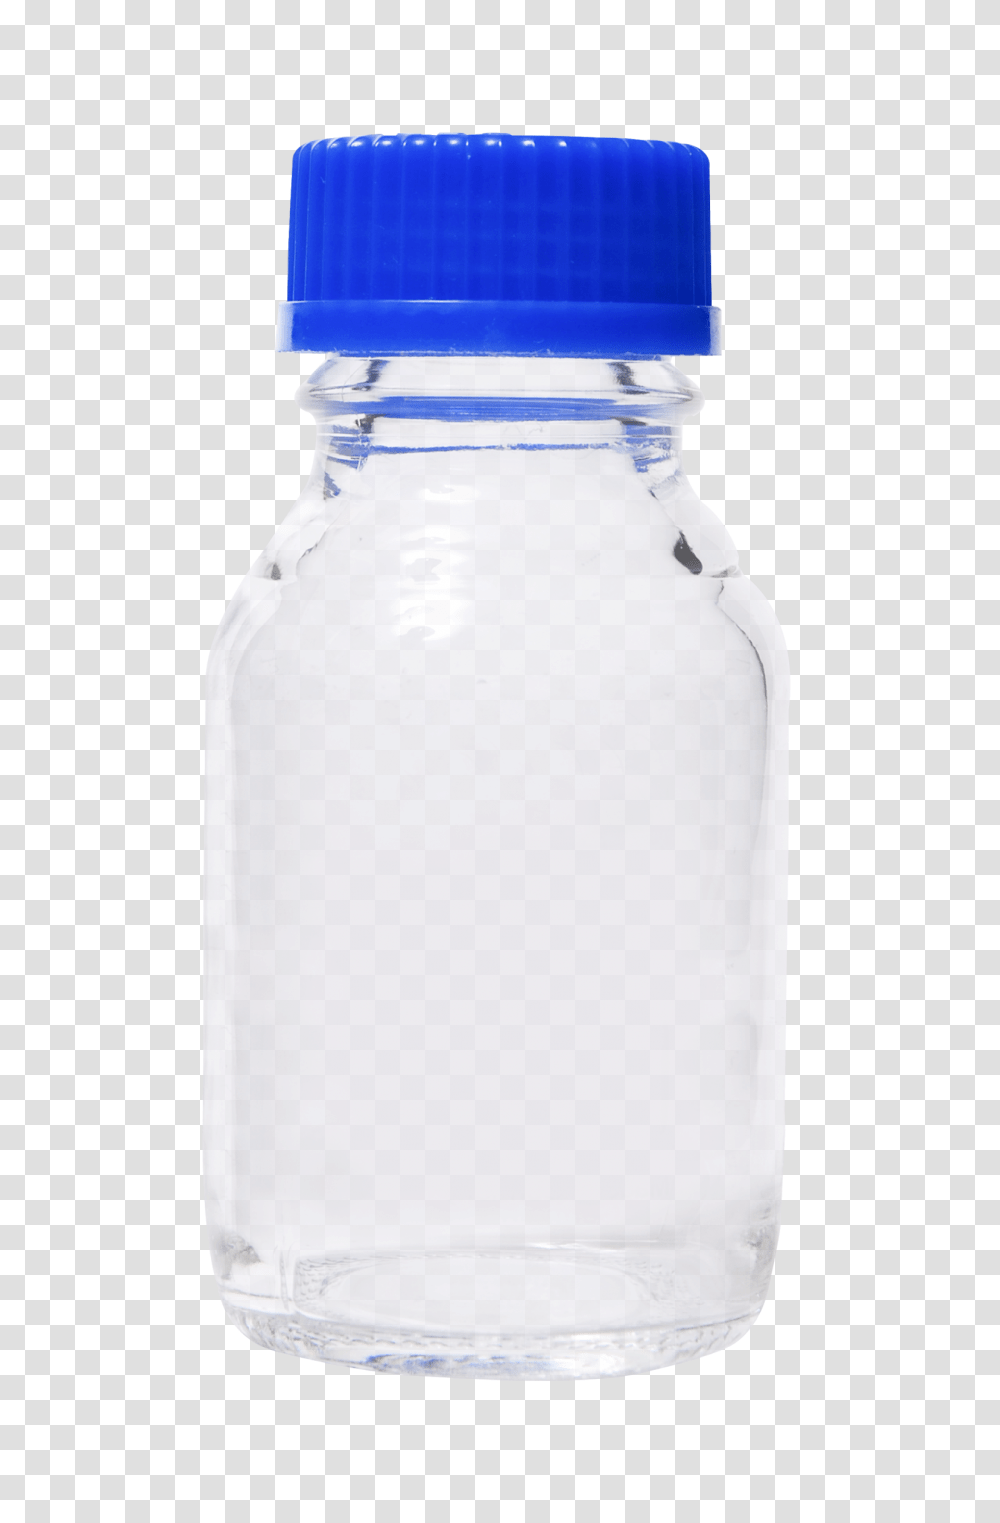 Glass Bottle Image, Jar, Diaper, Water Bottle Transparent Png